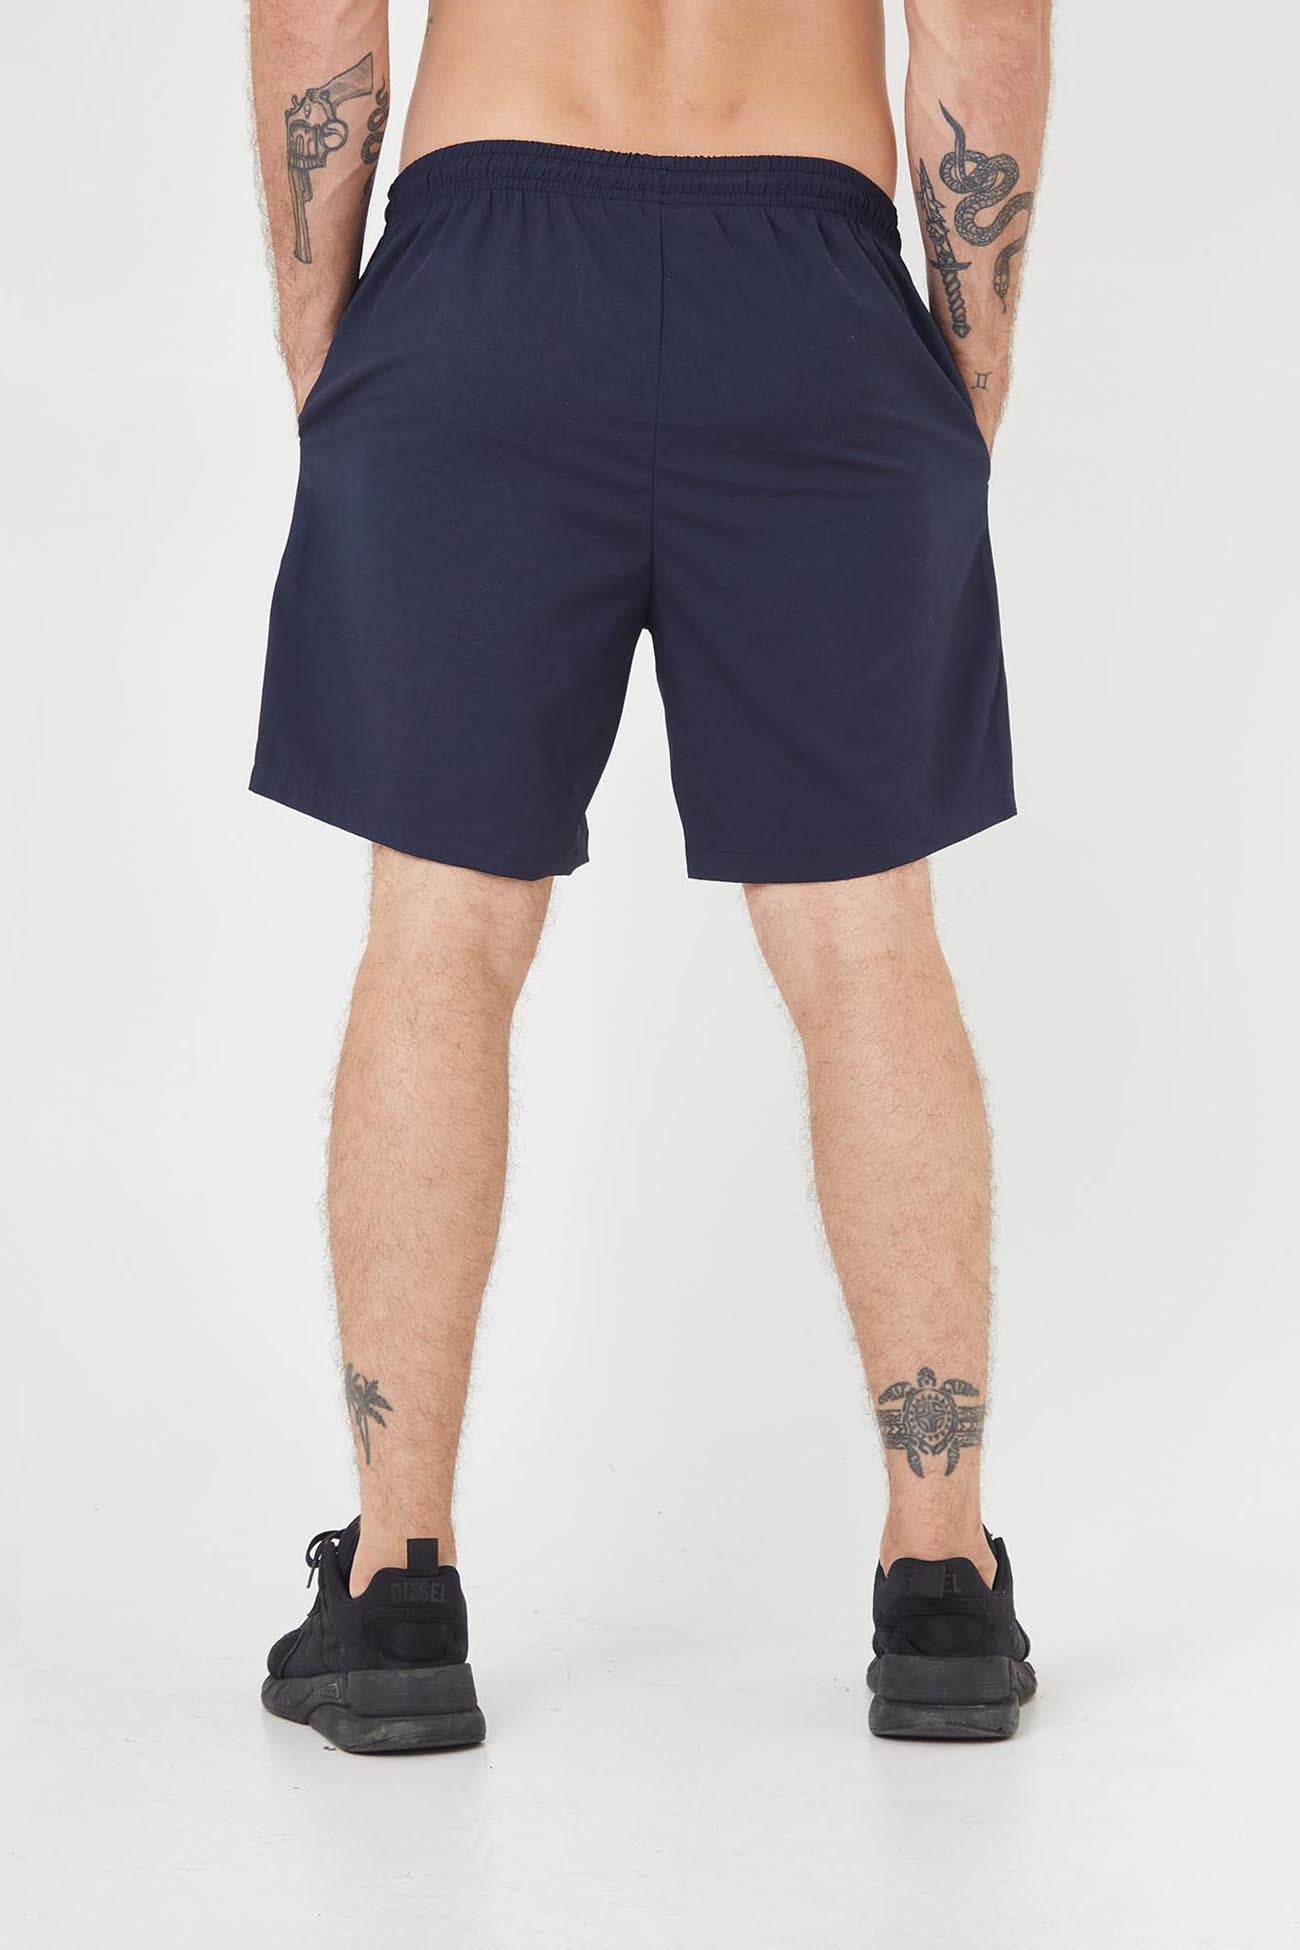 Pantaloneta deportiva azul oscuro fondo entero, bloques laterales y bolsillos laterales para hombre